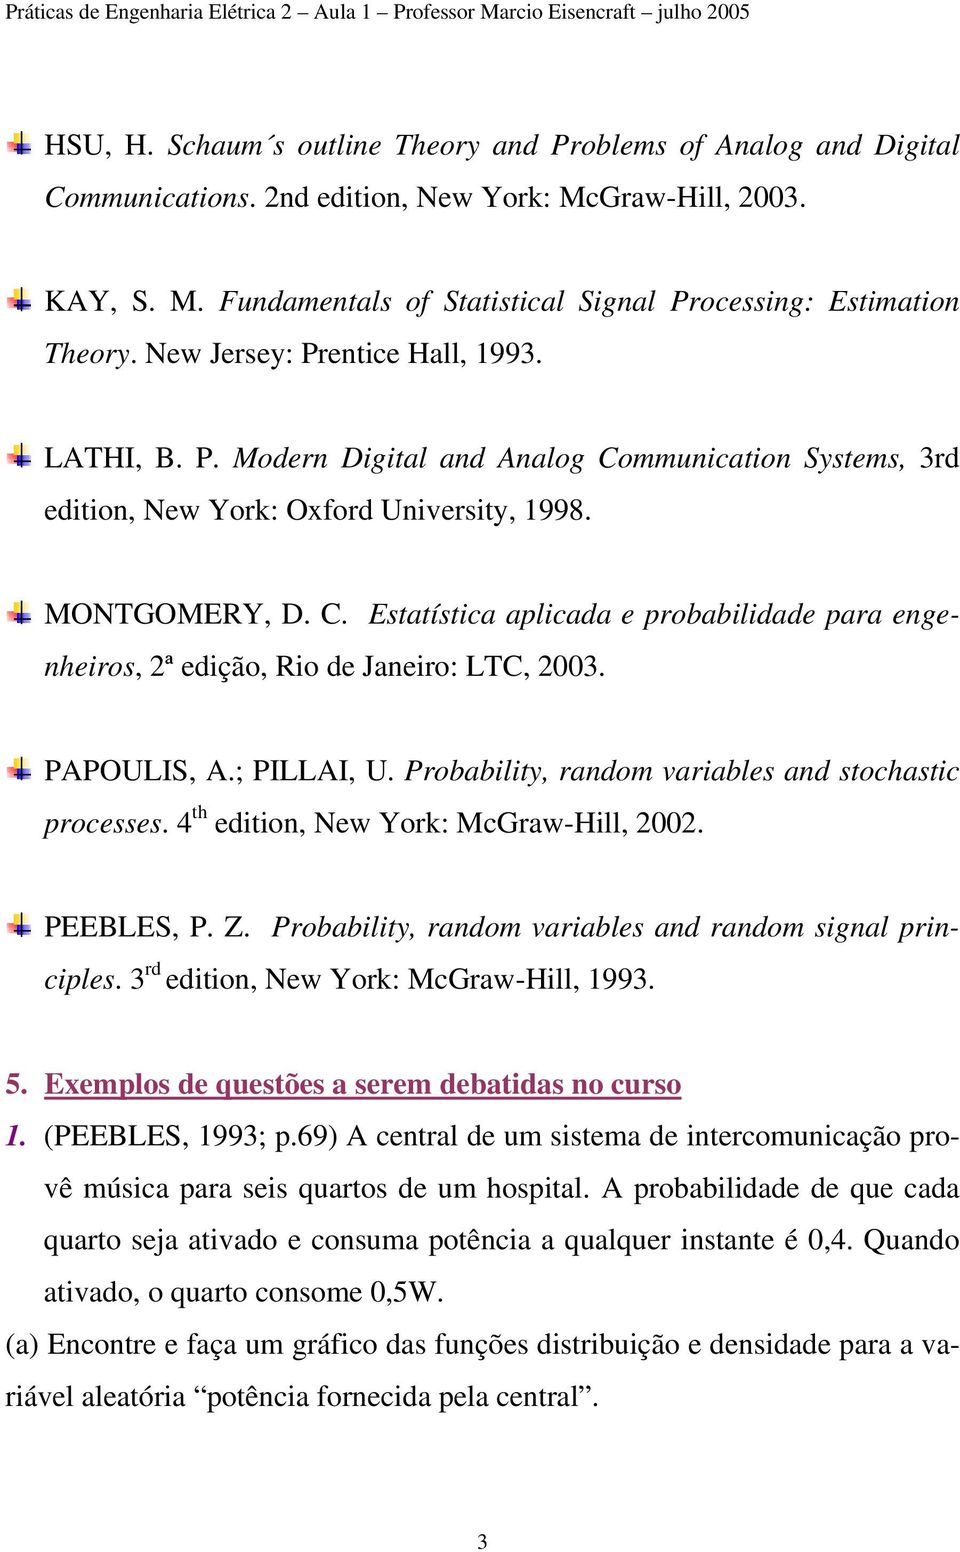 998 MONTGOMERY, D C Estatística aplicada e probabilidade para engenheiros, ª edição, Rio de Janeiro: LTC, 003 PAPOULIS, A; PILLAI, U Probability, random variables and stochastic processes 4 th